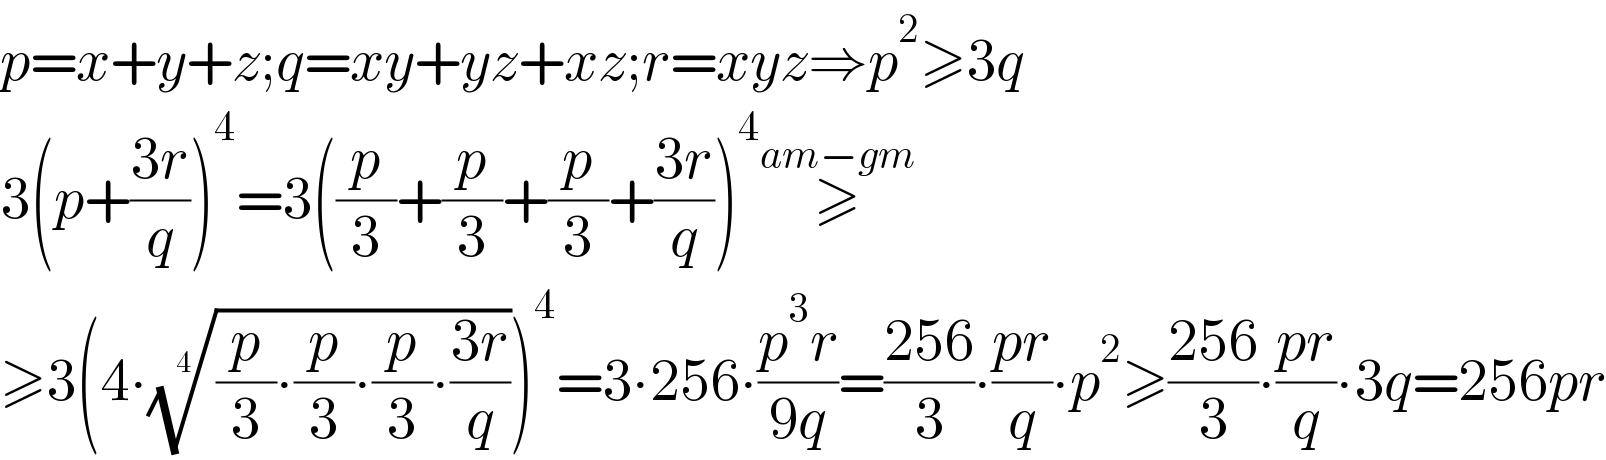 p=x+y+z;q=xy+yz+xz;r=xyz⇒p^2 ≥3q  3(p+((3r)/q))^4 =3((p/3)+(p/3)+(p/3)+((3r)/q))^4 ≥^(am−gm)   ≥3(4∙(((p/3)∙(p/3)∙(p/3)∙((3r)/q)))^(1/4) )^4 =3∙256∙((p^3 r)/(9q))=((256)/3)∙((pr)/q)∙p^2 ≥((256)/3)∙((pr)/q)∙3q=256pr  